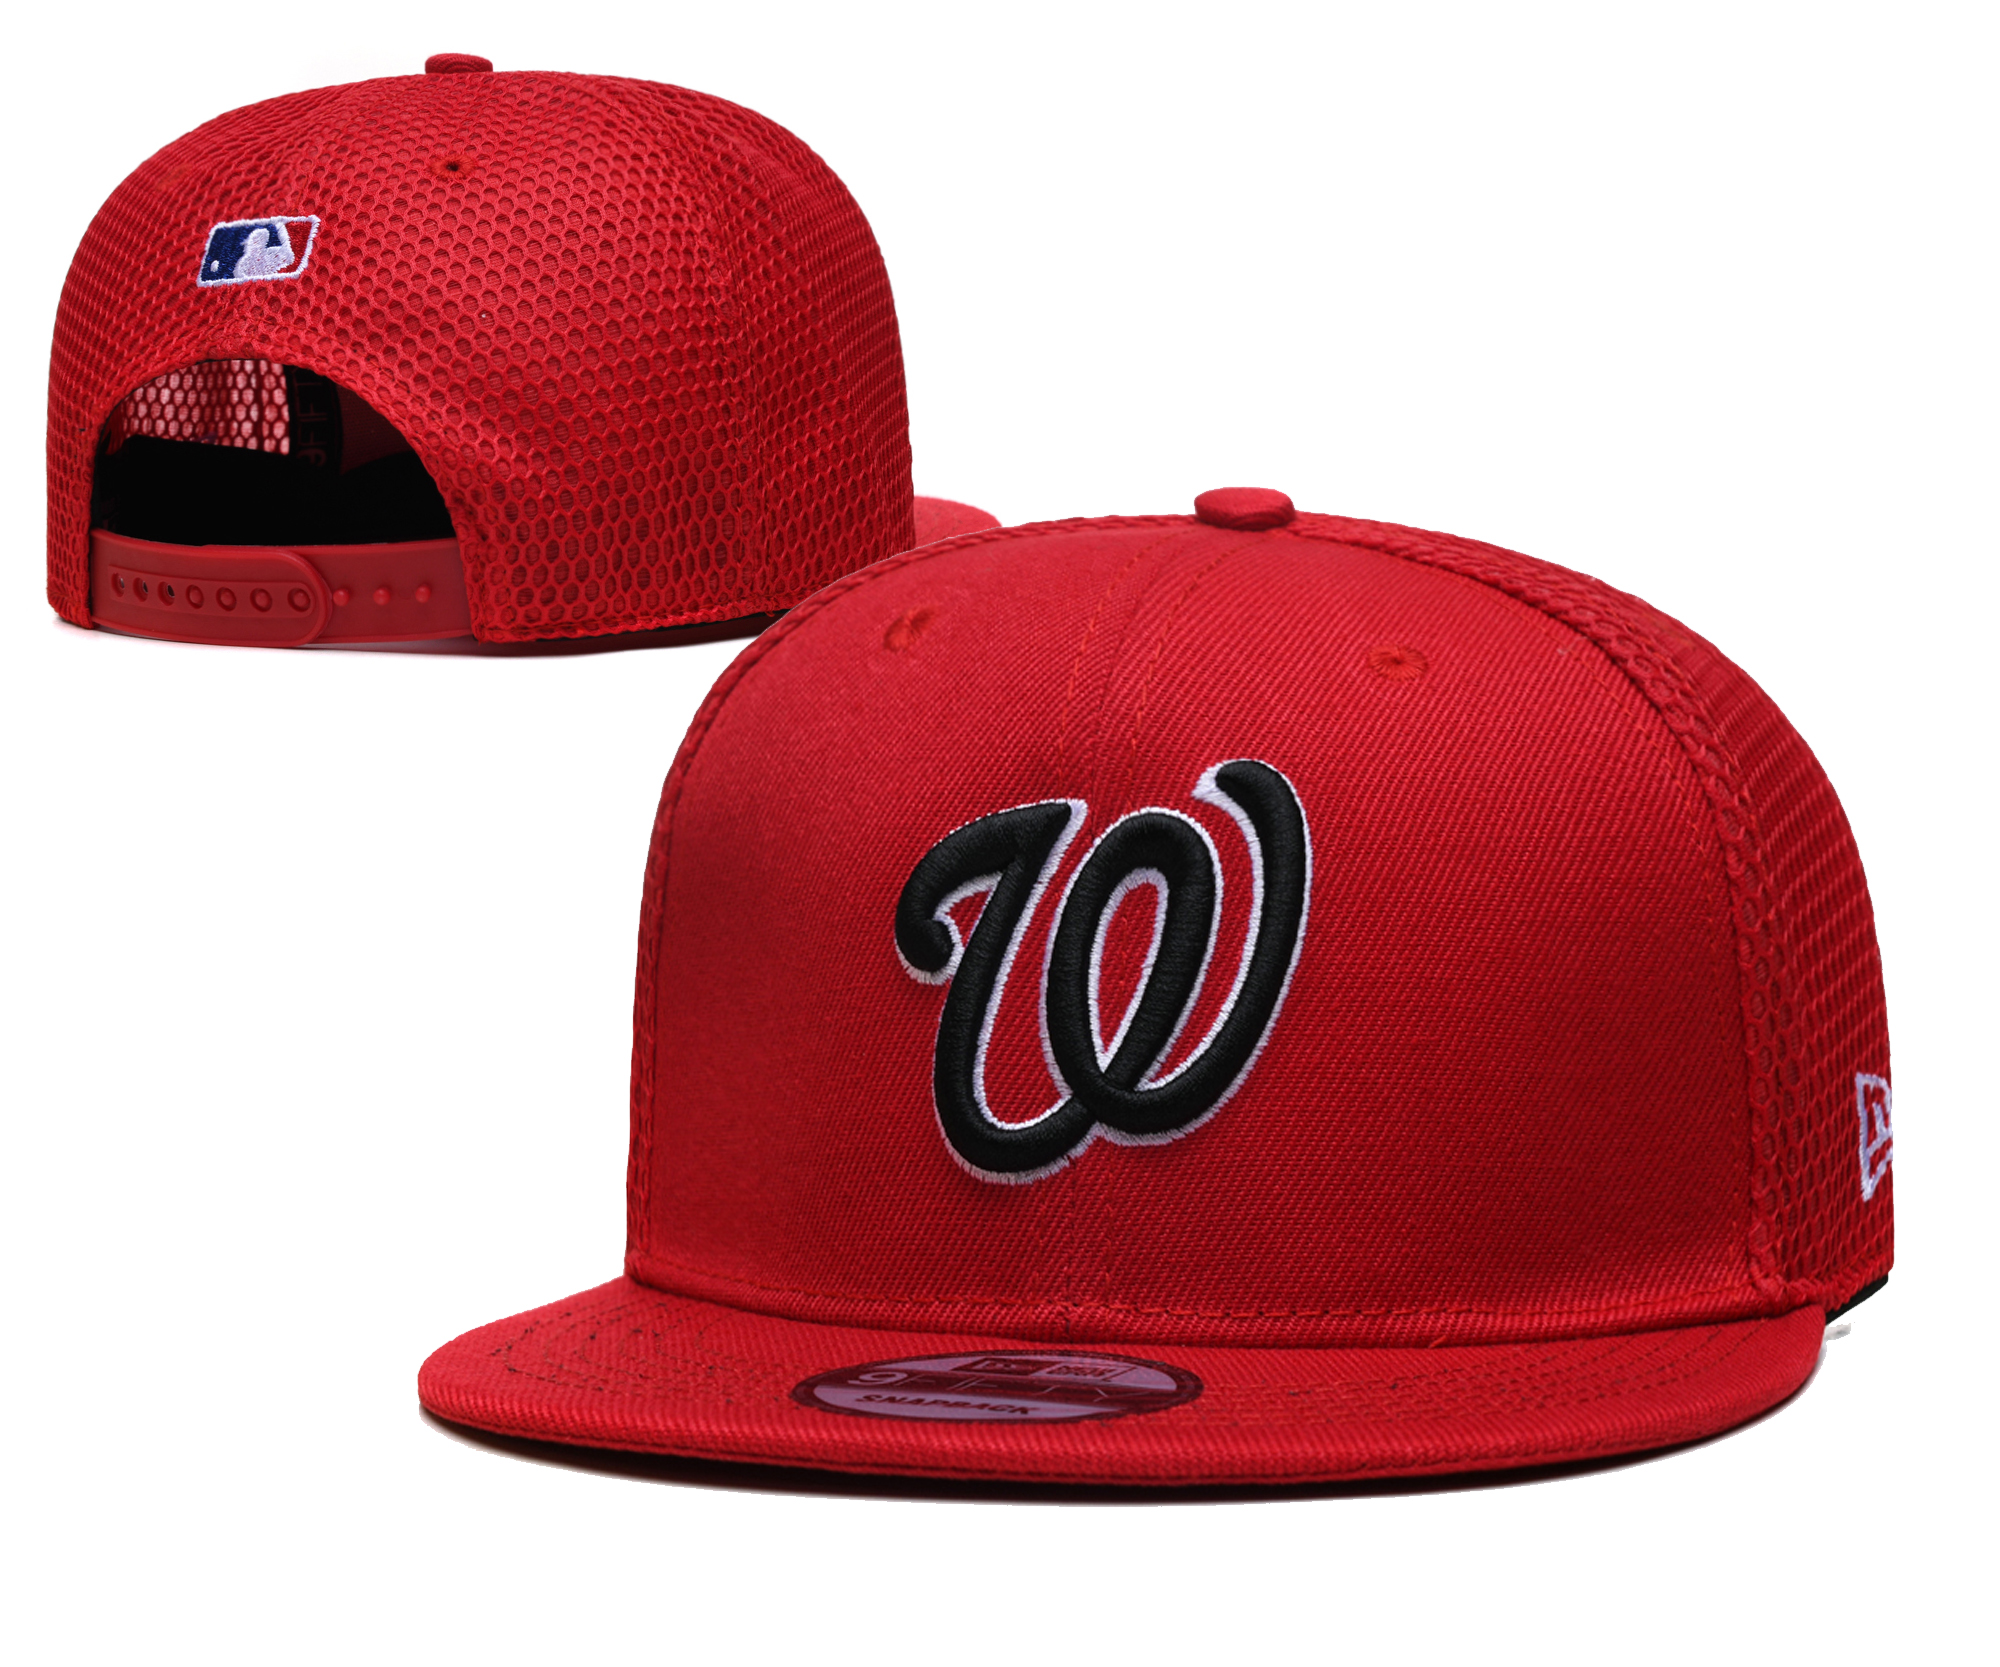 Cheap 2021 MLB Washington Nationals 10 TX hat